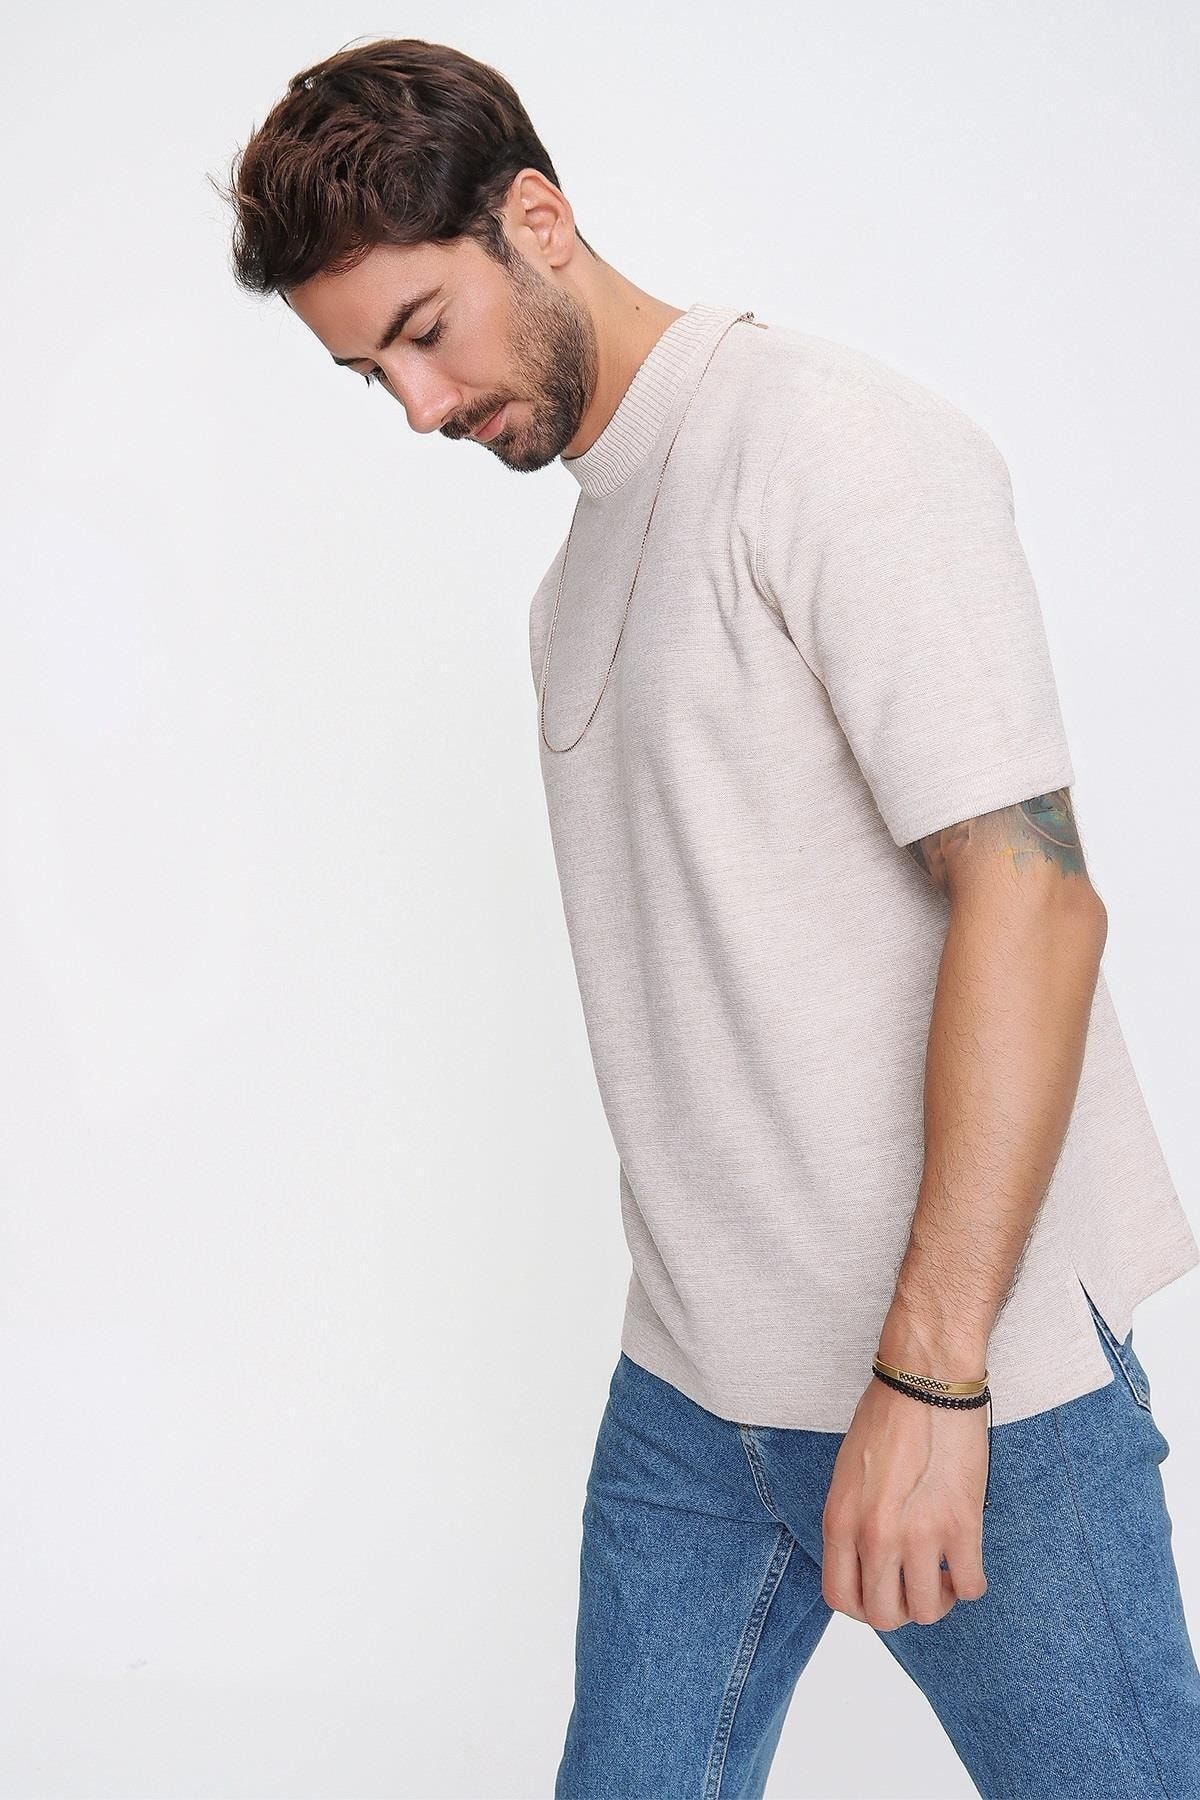 CHUBA Erkek Oversize Triko T-shirt Bej 20w188